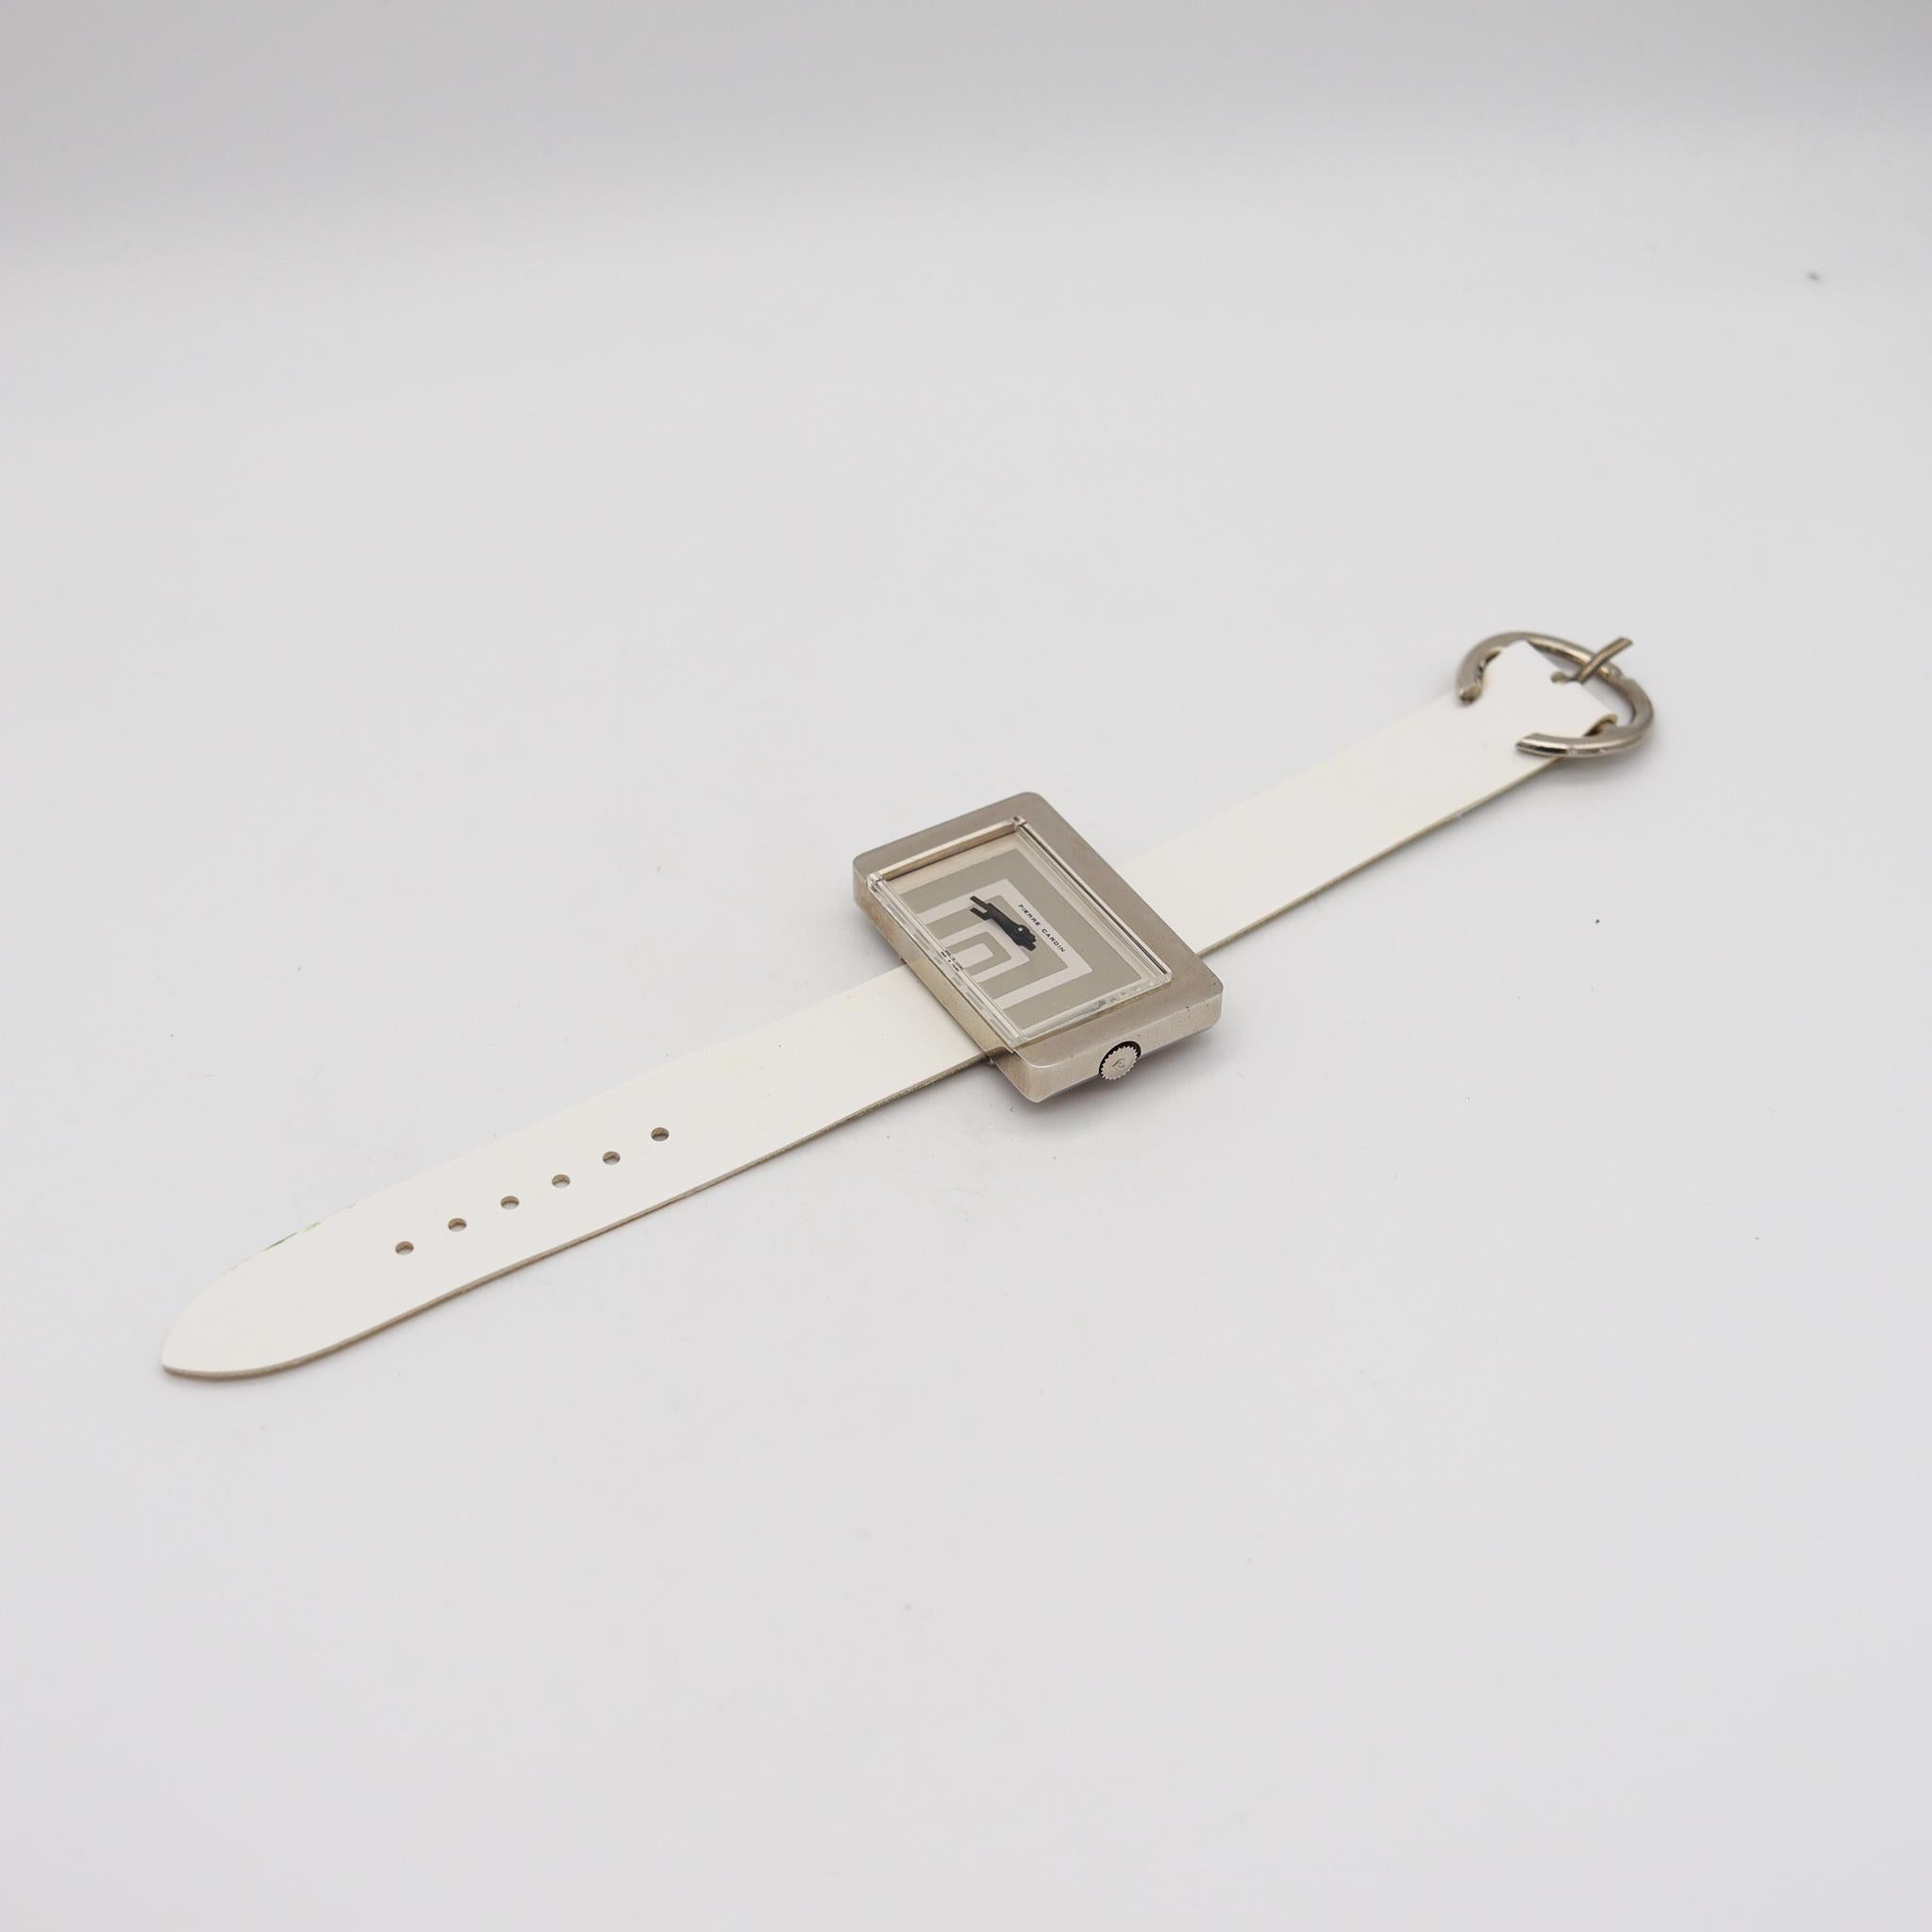 Montre-bracelet Jaeger-LeCoultre PC116 conçue par Pierre Cardin.

Fabuleuse montre-bracelet rétro, conçue en France par le couturier parisien Pierre Cardin, en 1971. Cette belle et rare montre est le modèle Pierre Cardin PC116, et a été conçu avec